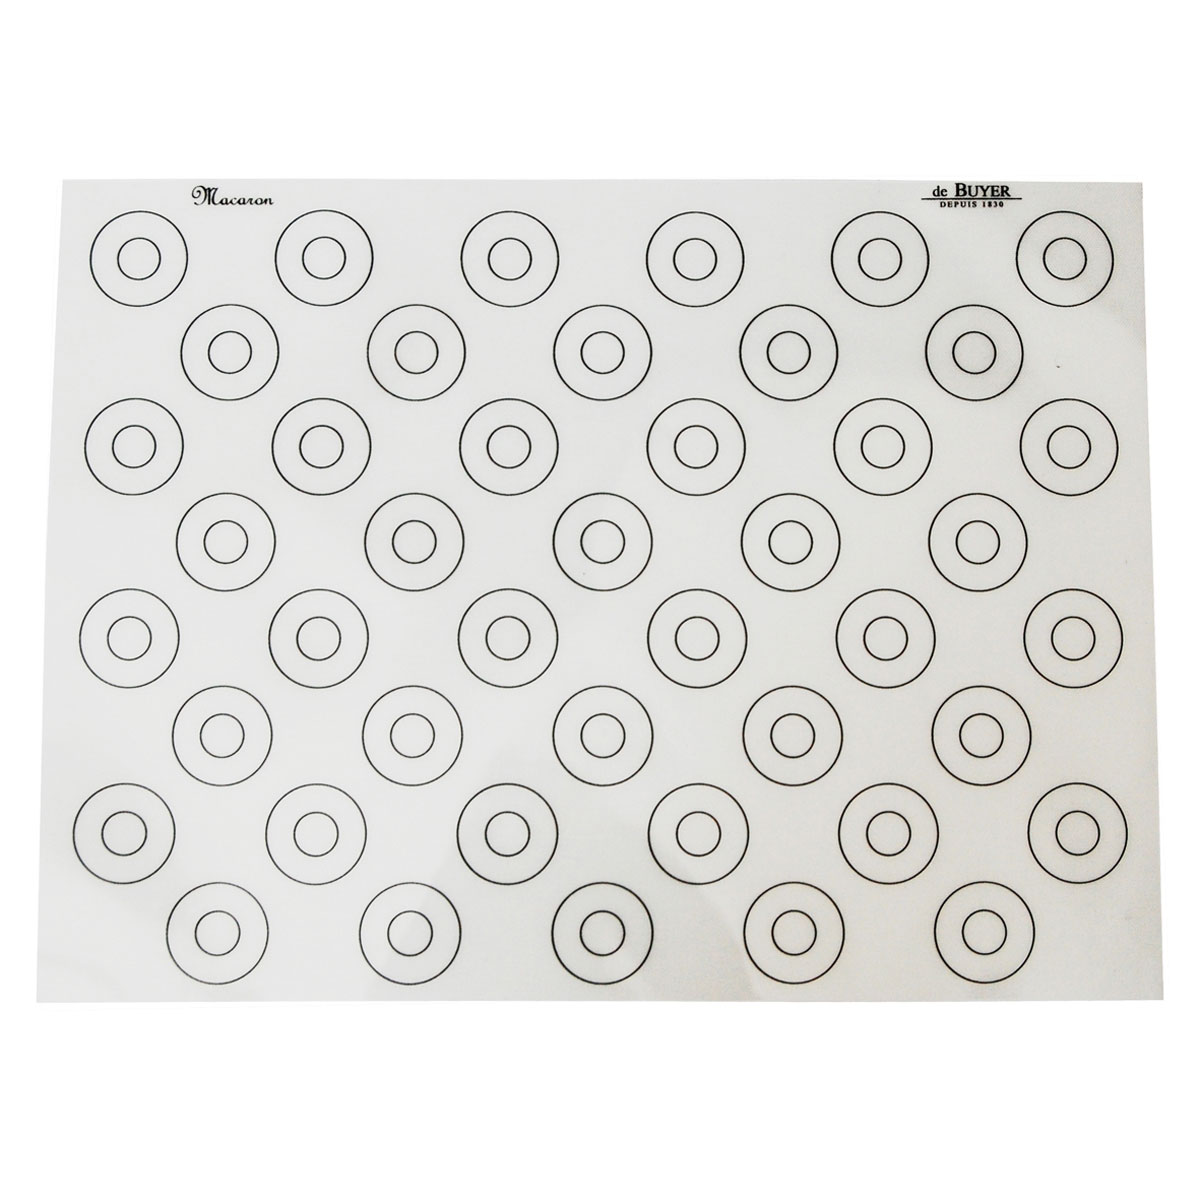 de Buyer Patisserie Backmatte 40x30 cm Silikon mit 44 runden Markierungen / mit Antihaft-Eigenschaften